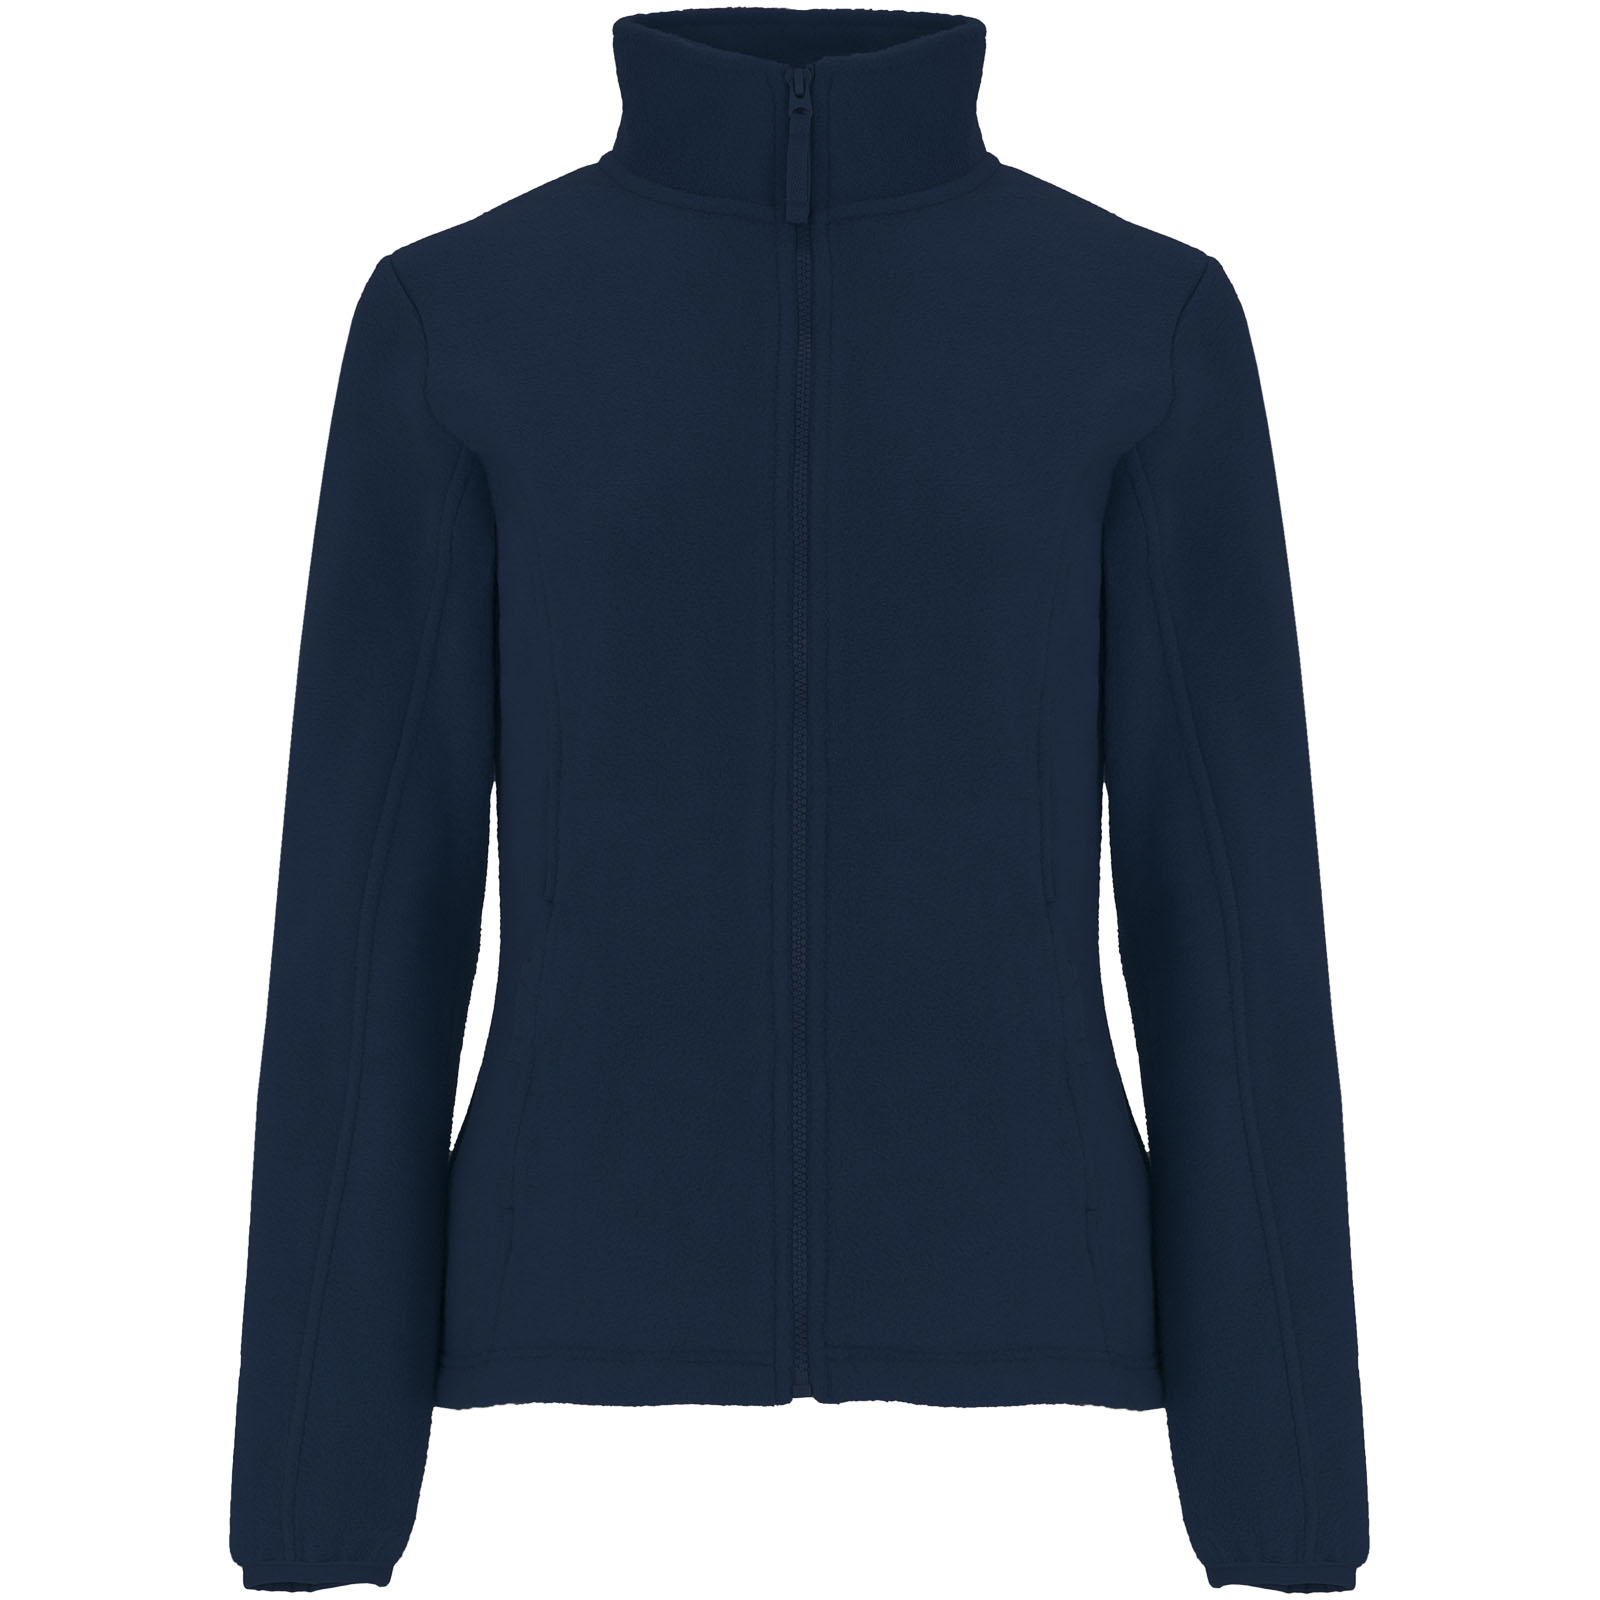 Clothing - Artic women's full zip fleece jacket